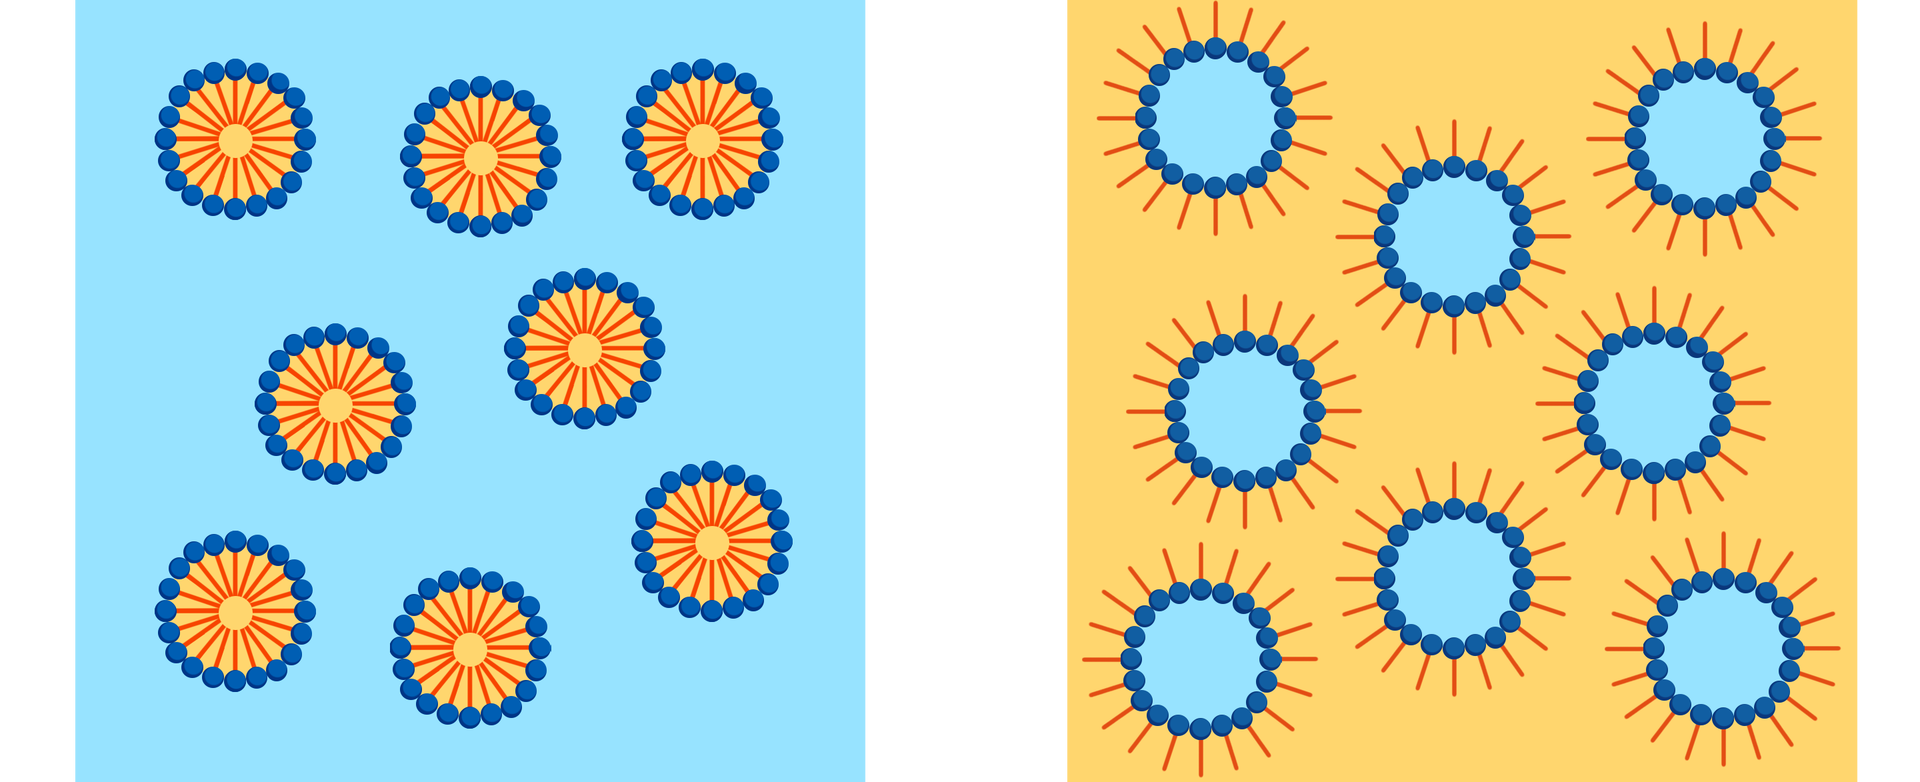 Na ilustracji pierwszej są kuleczki na niebieskim tle. Kulki składają się z ogonków skierowanych do wewnątrz i kuleczek, tworzących otoczkę kulki. Na drugiej ilustracji kulki na żółtym tle. Kulki mają niebieskie środki, ogonki są skierowane na zewnątrz.    